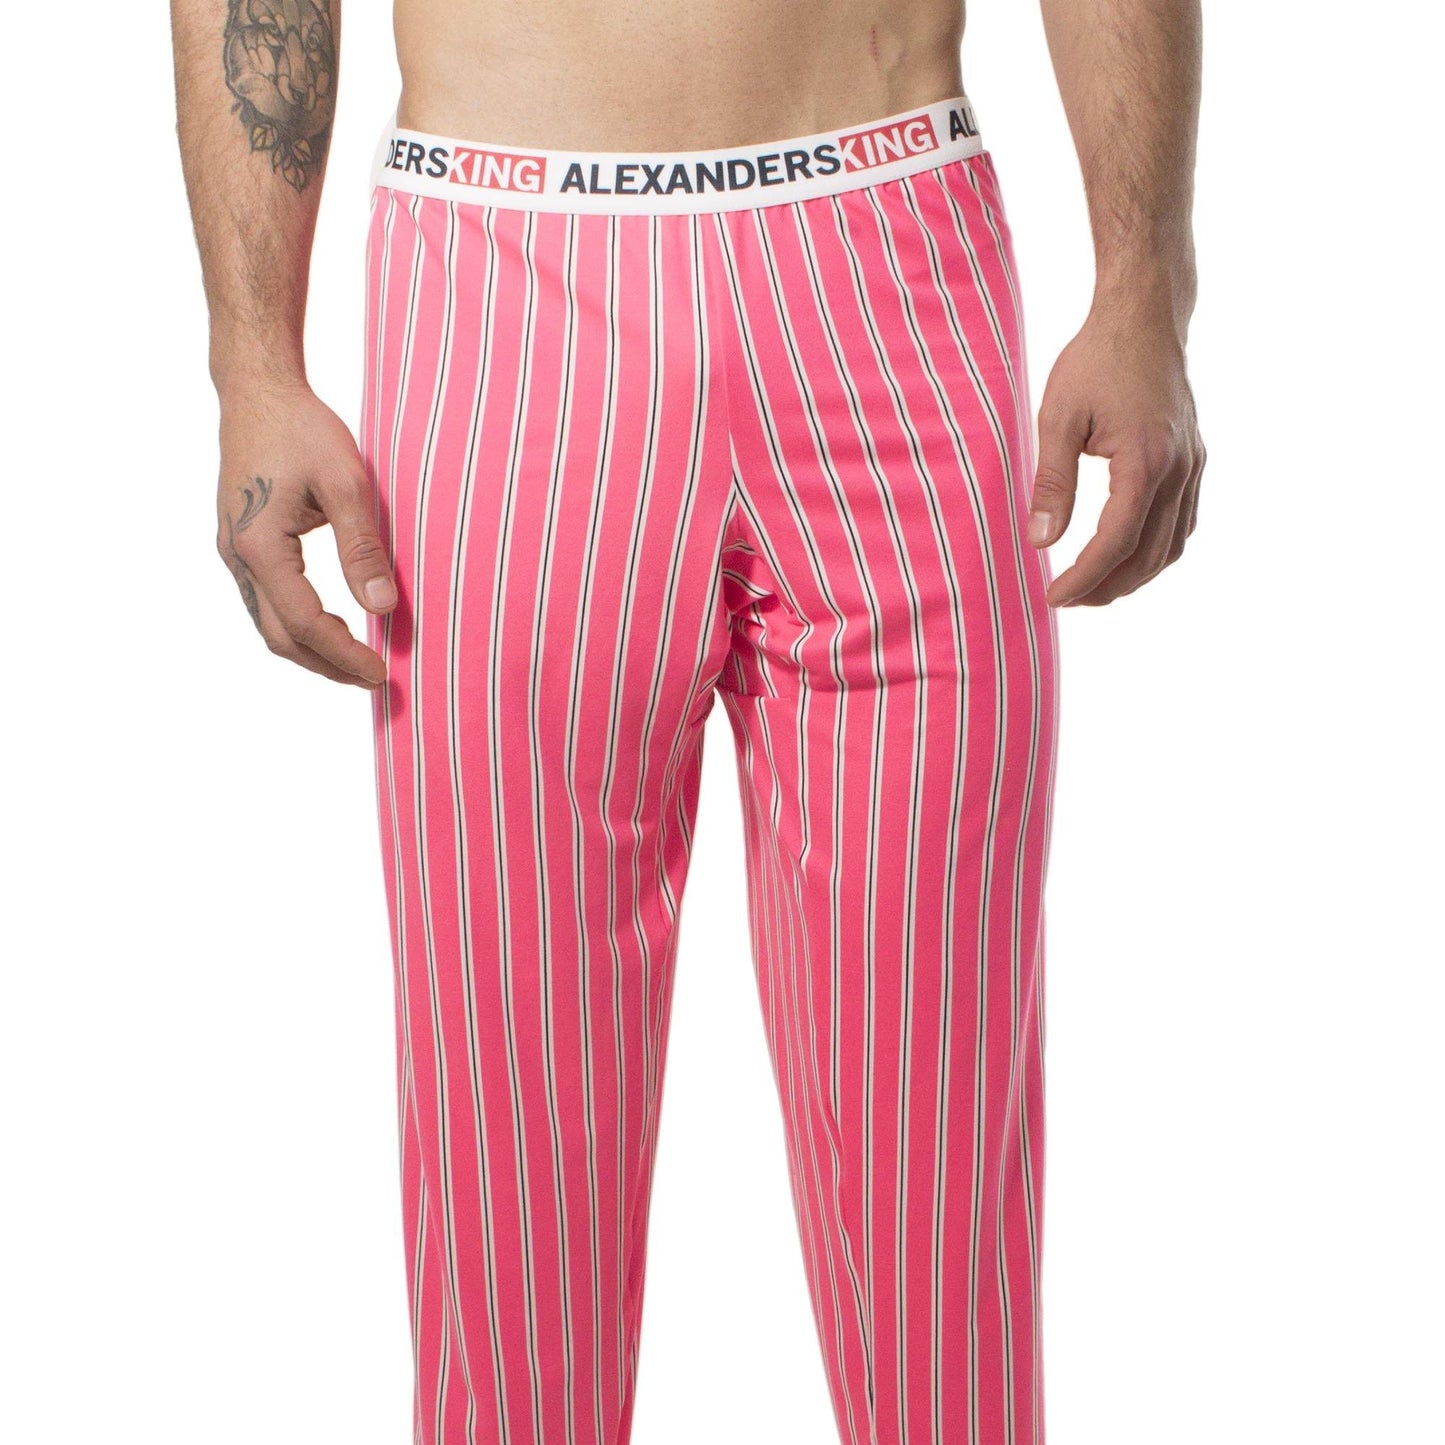 PP0006 - Pantalón Pijama Bonet - AlexandersKing Underwear